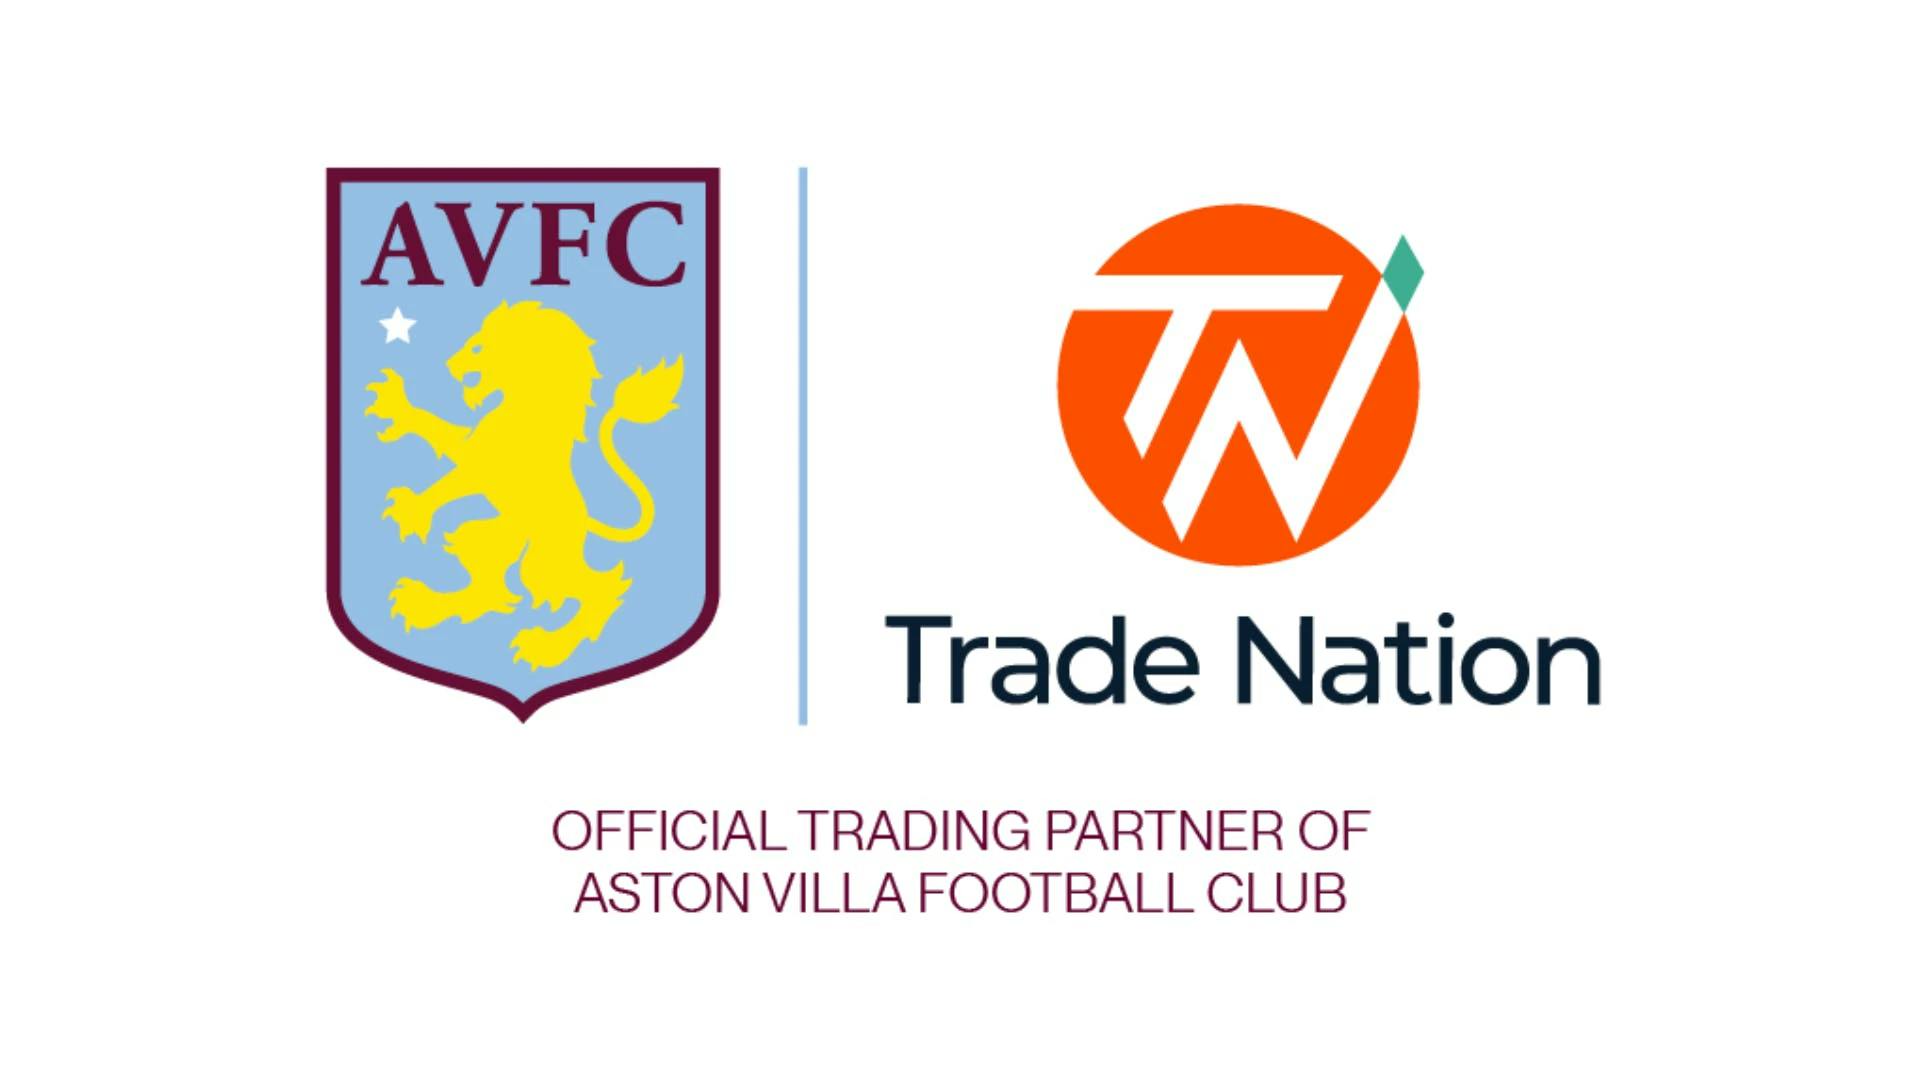 Official trading partner of Aston Villa Football Club